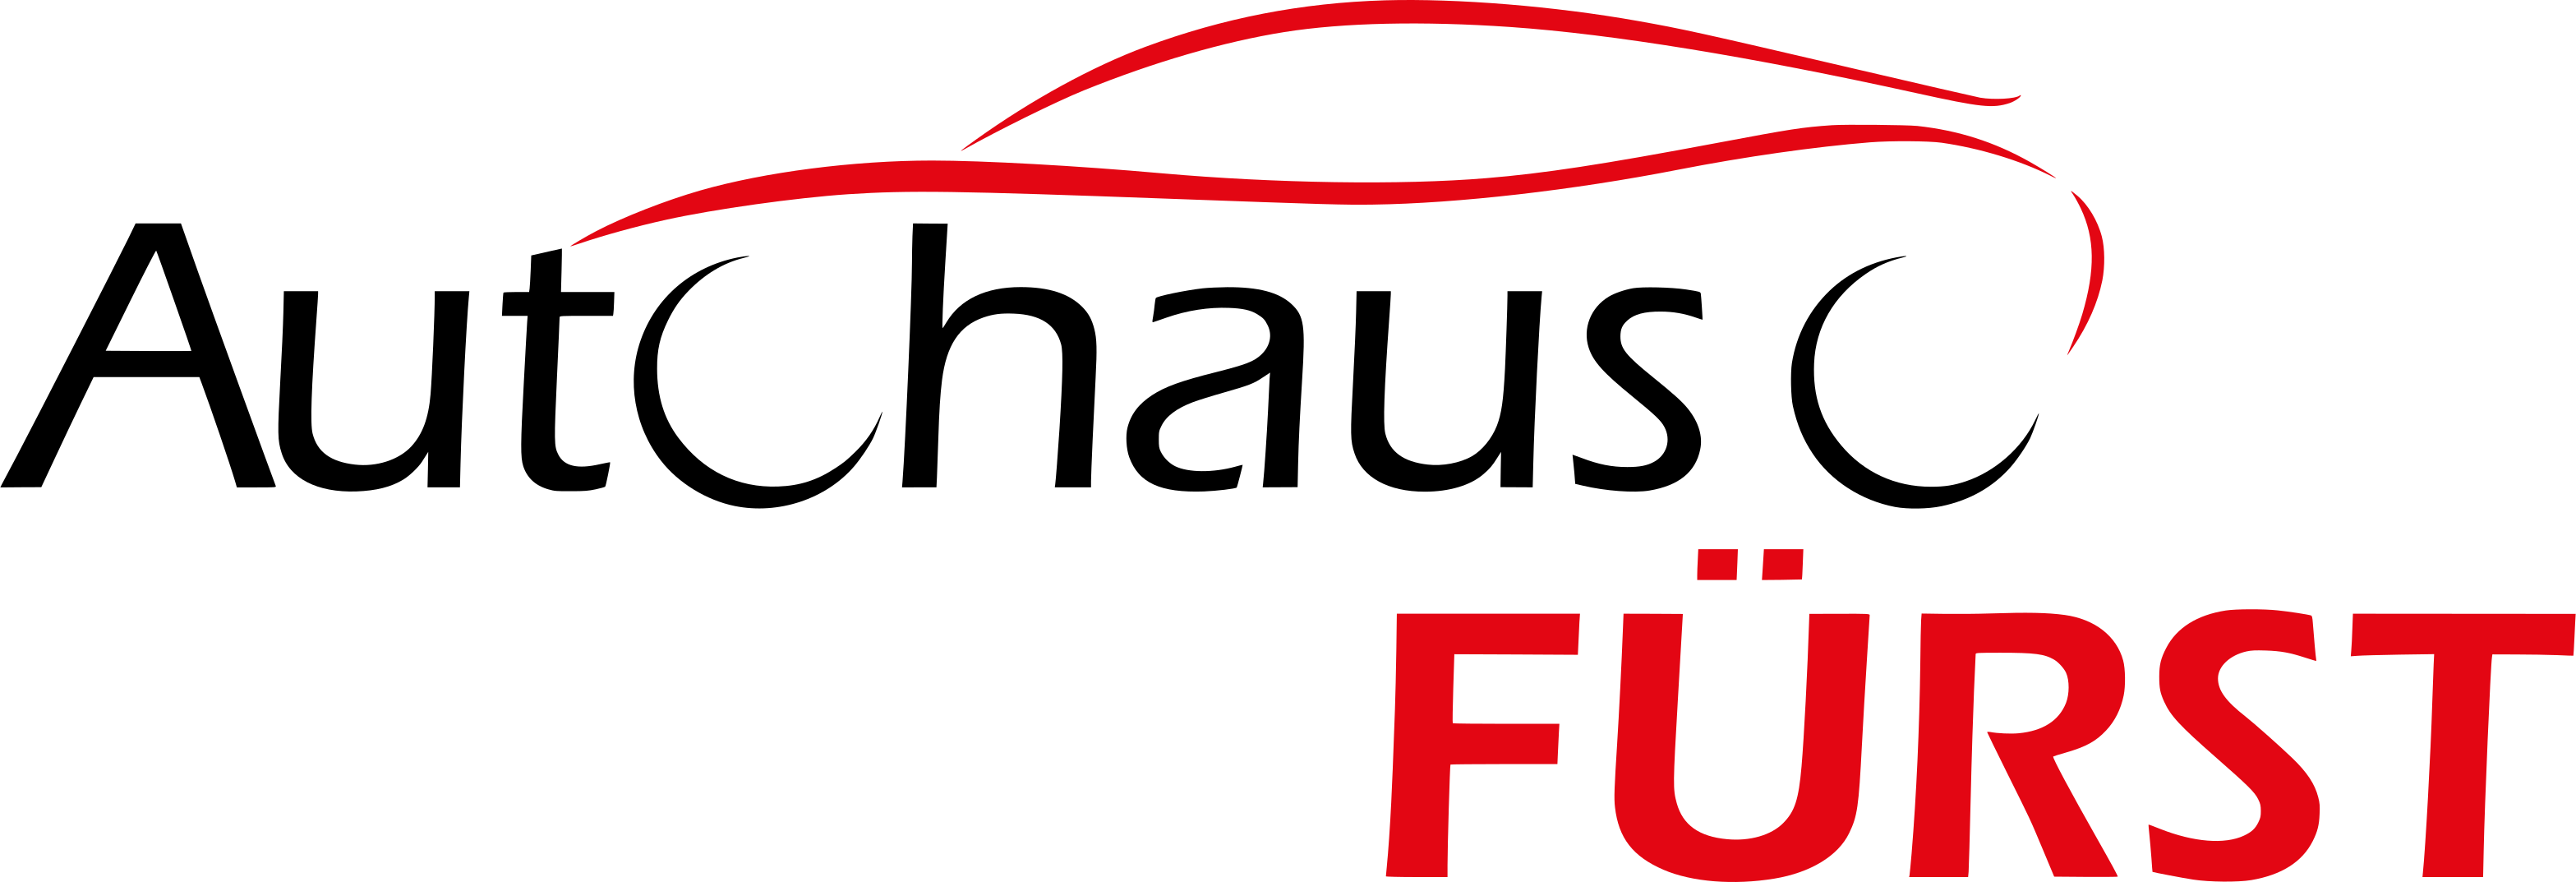 Autohaus Fürst GmbH